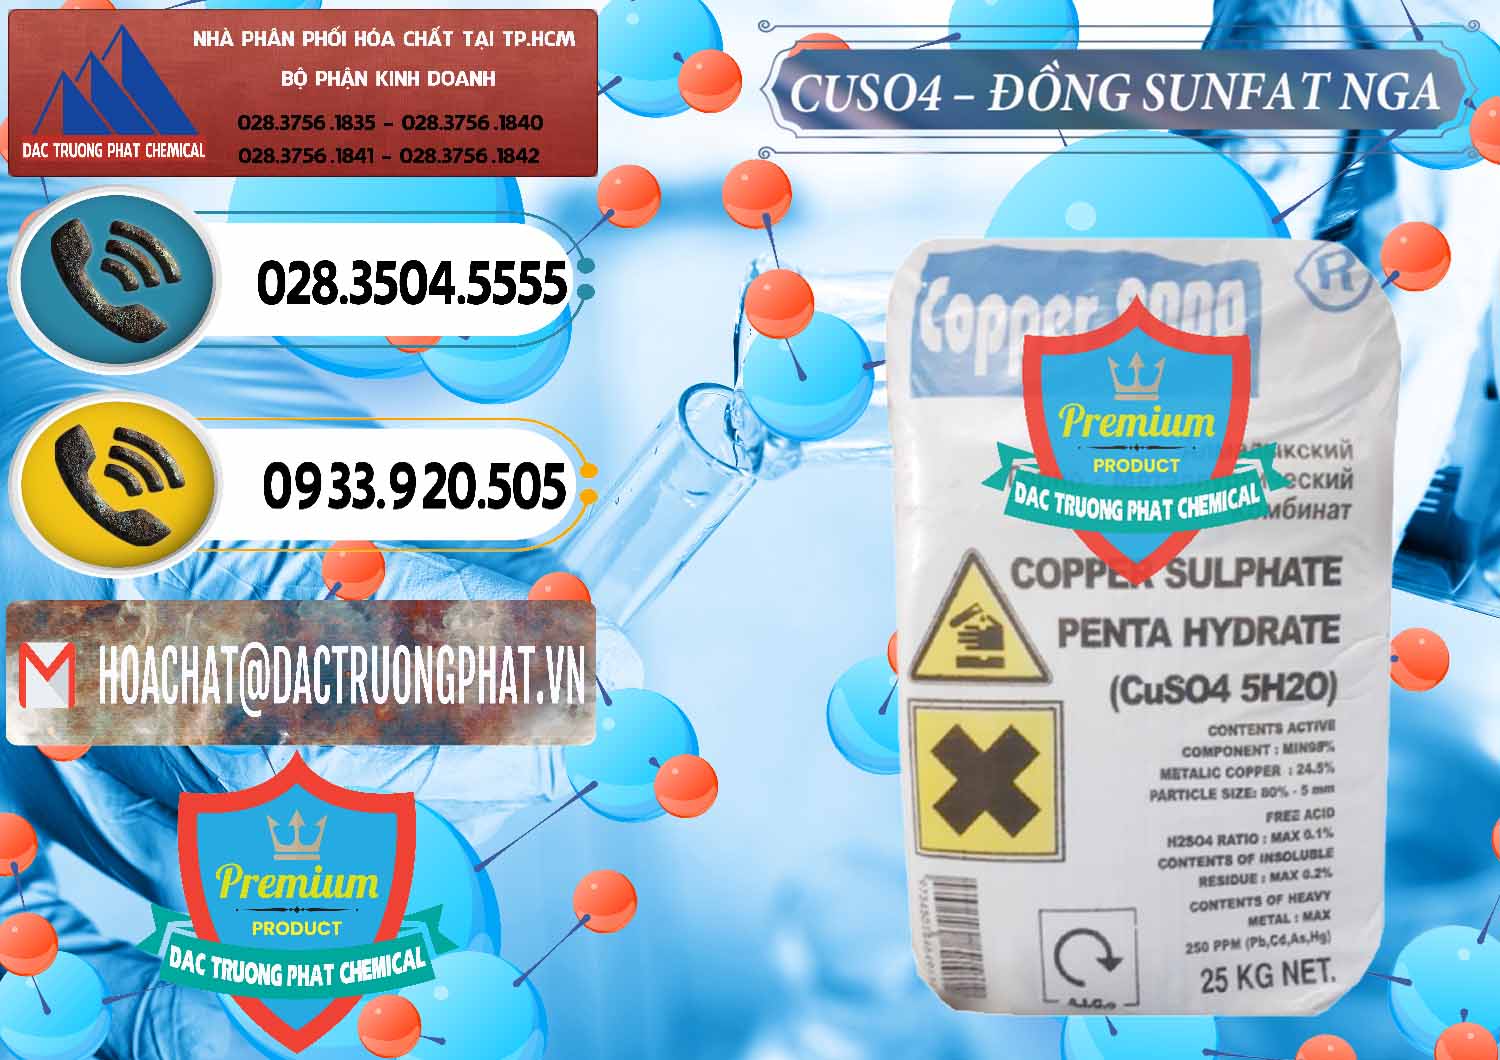 Công ty chuyên bán & cung cấp CuSO4 – Đồng Sunfat Nga Russia - 0480 - Nơi nhập khẩu _ phân phối hóa chất tại TP.HCM - hoachatdetnhuom.vn